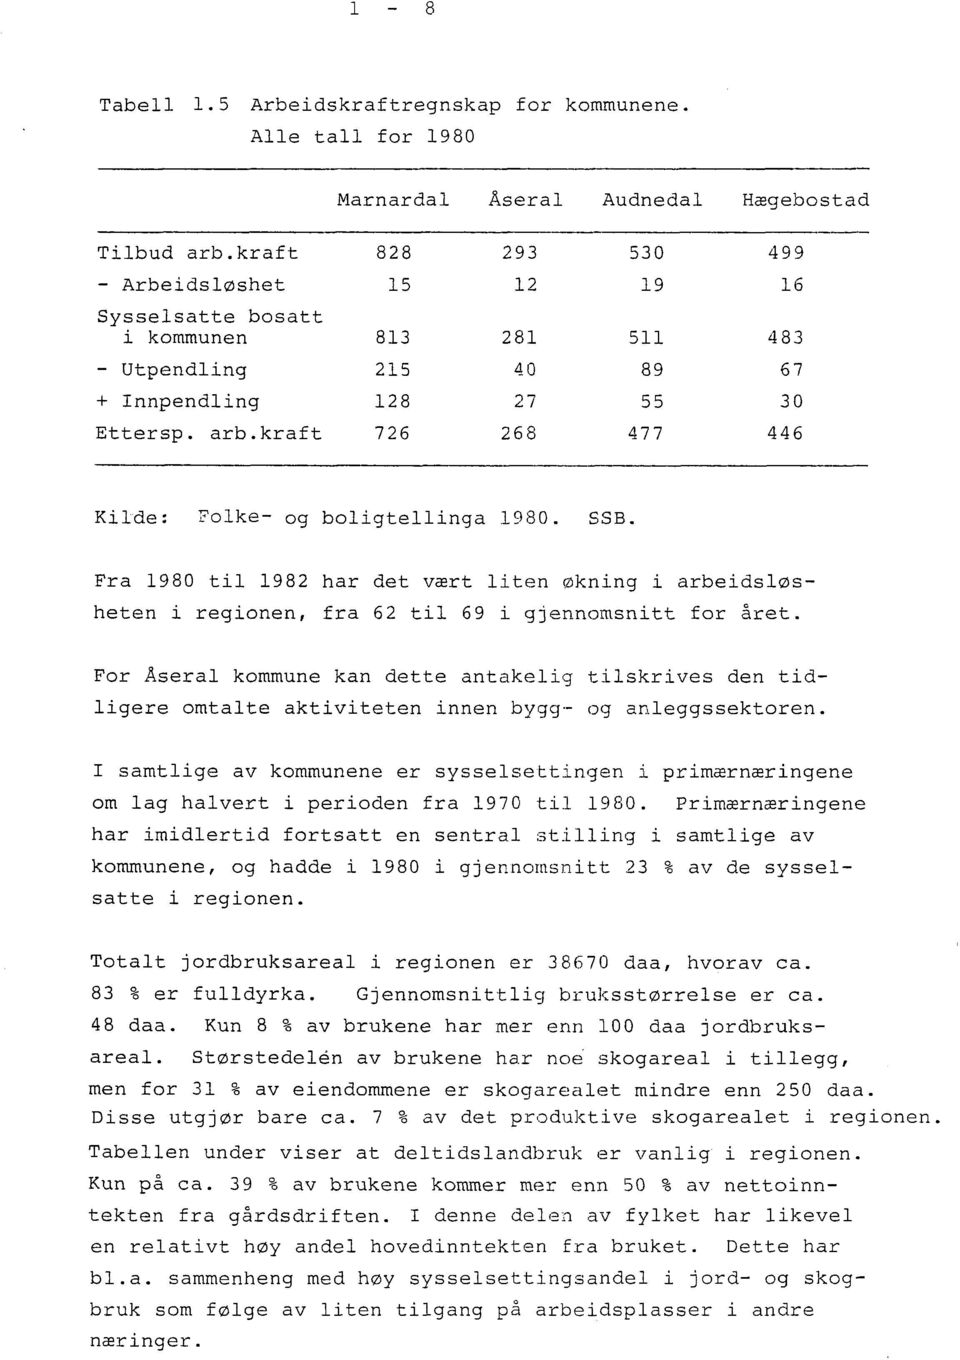 kraft 726 268 477 446 Ki~de: Folke- og boligtellinga 1980. SSB. Fra 1980 til 1982 har det vært liten økning i arbeidsløsheten i regionen, fra 62 til 69 i gjennomsnitt for året.